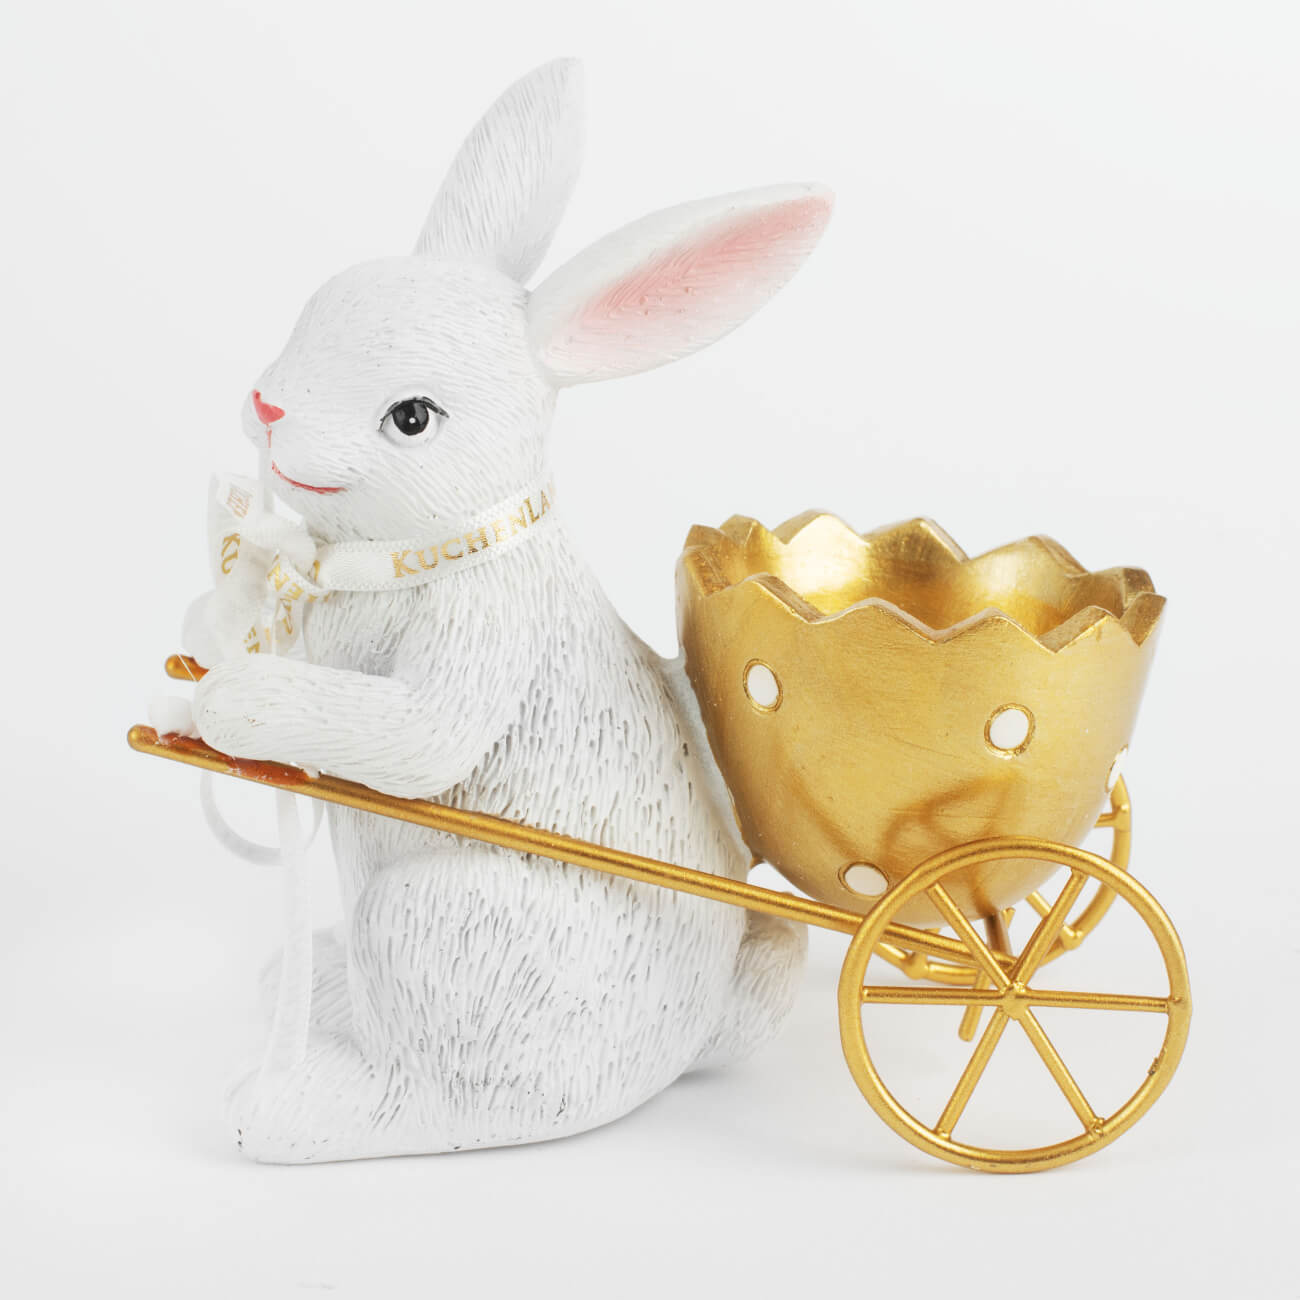 Подставка для яйца, 12 см, полирезин, бело-золотистая, Кролик с тележкой, Easter gold подставка для яйца 8х5 см дерево кролик natural easter